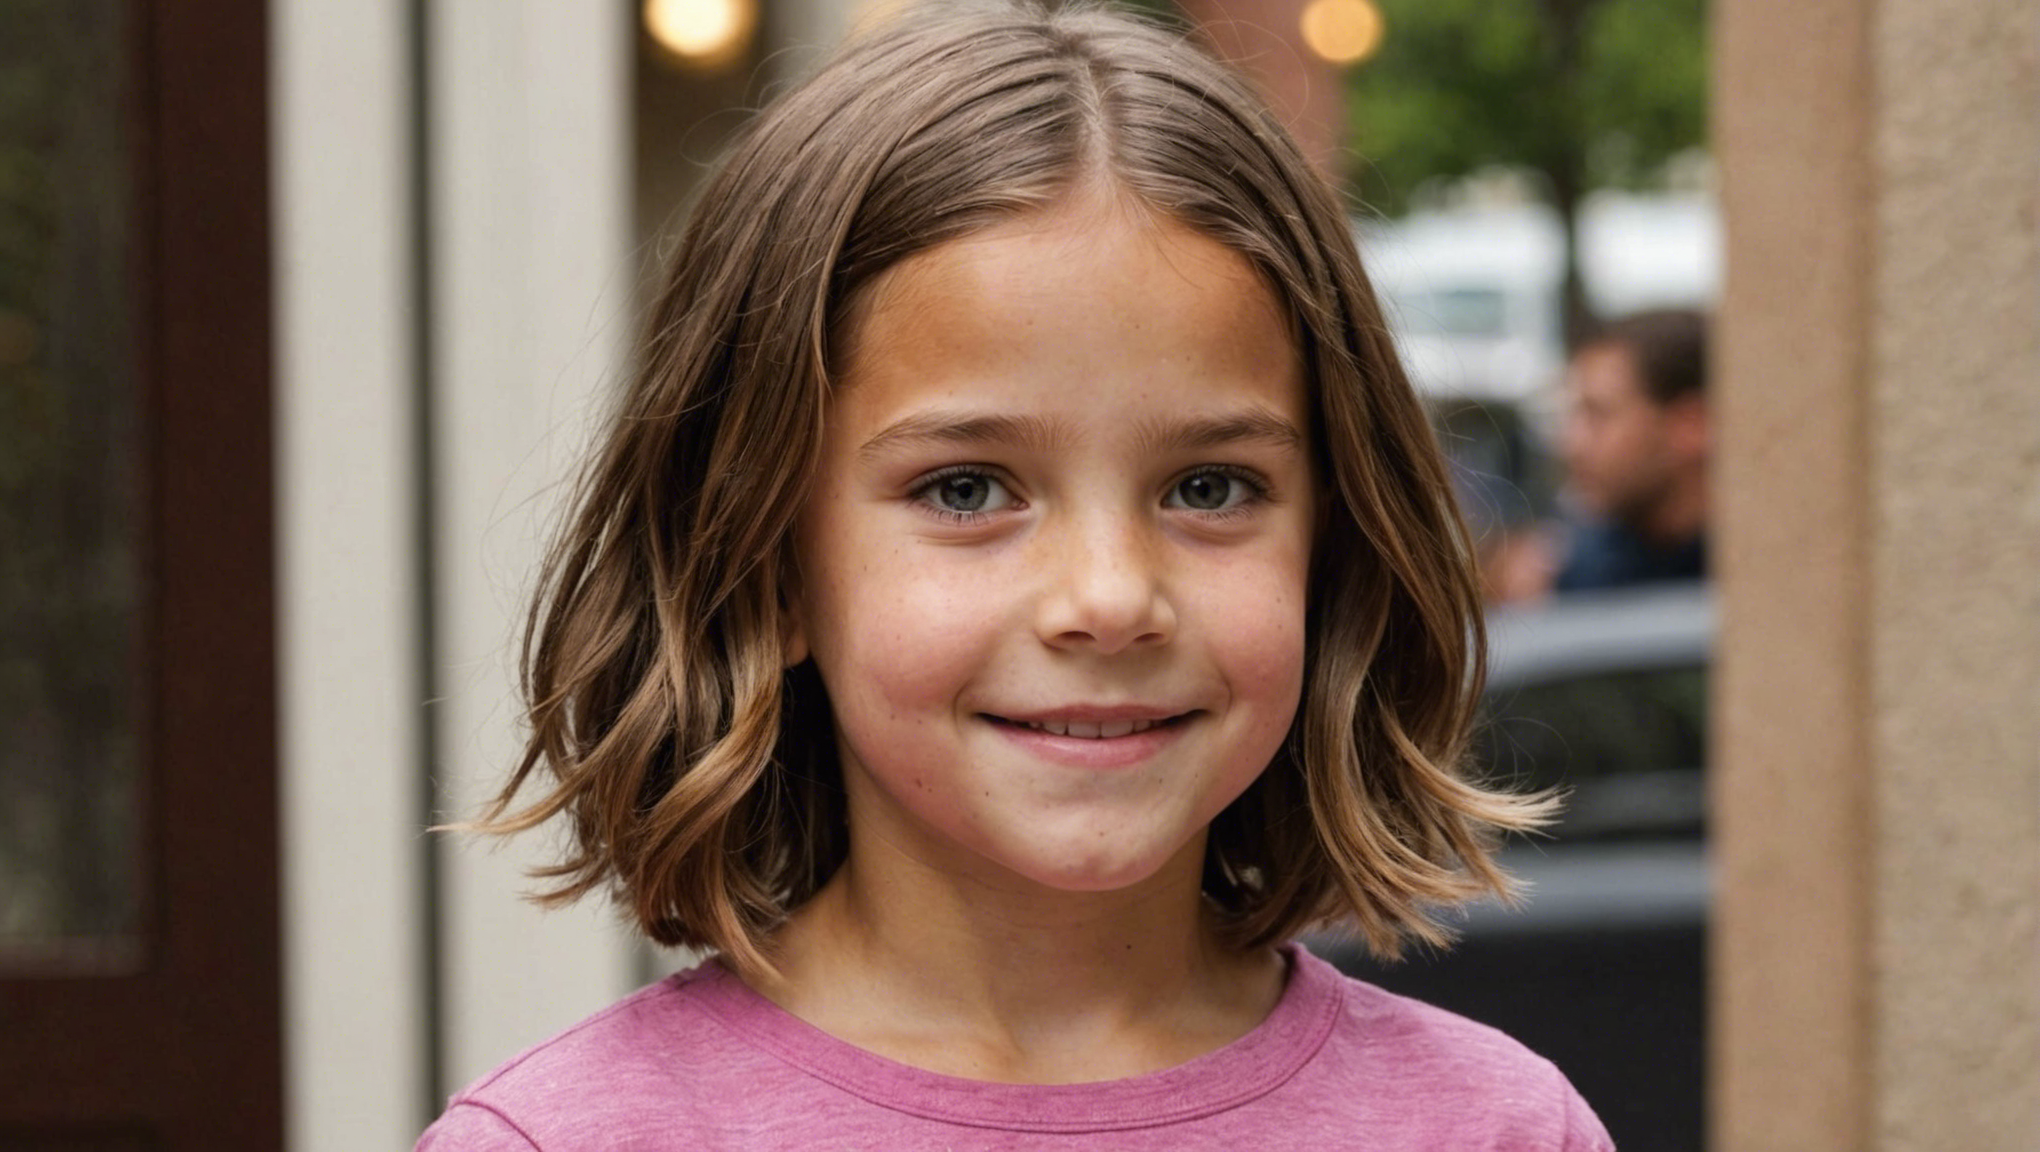 découvrez quelle est la meilleure longueur de coupe pour une fille de 10 ans et comment obtenir un look adorable et facile à entretenir.